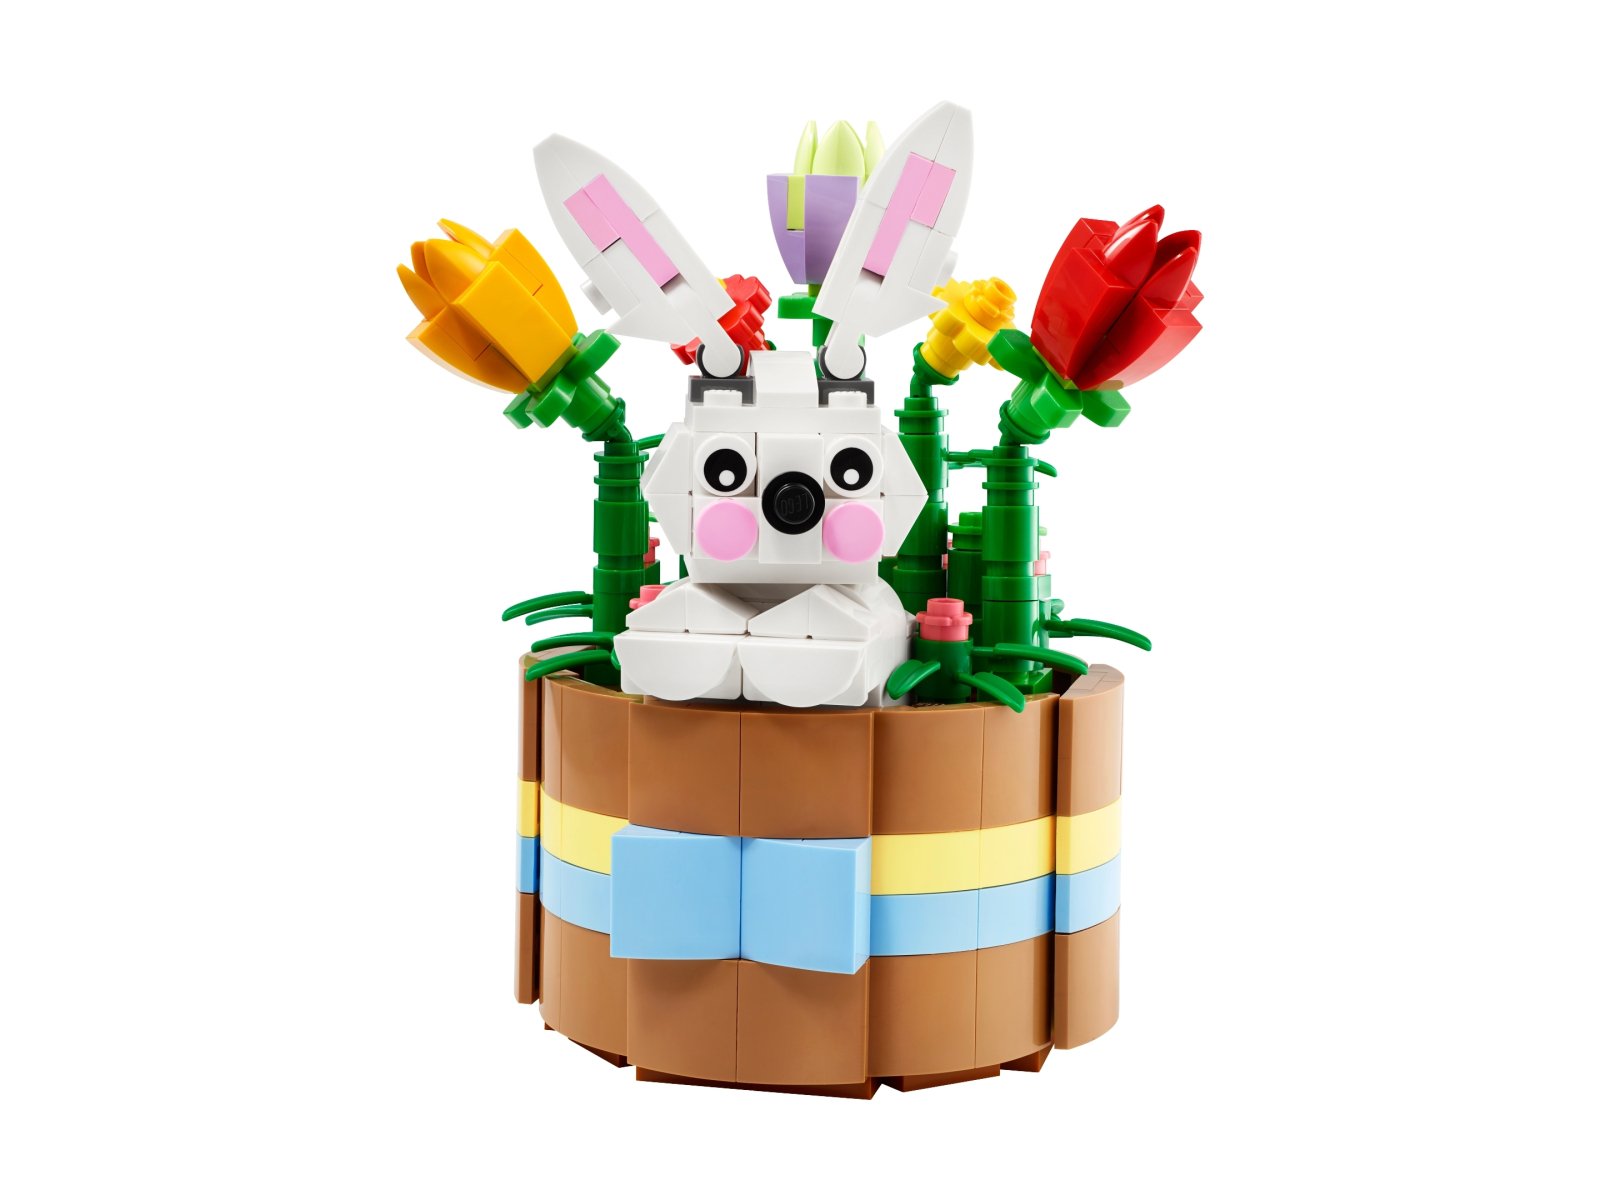 LEGO 40587 Wielkanocny koszyk